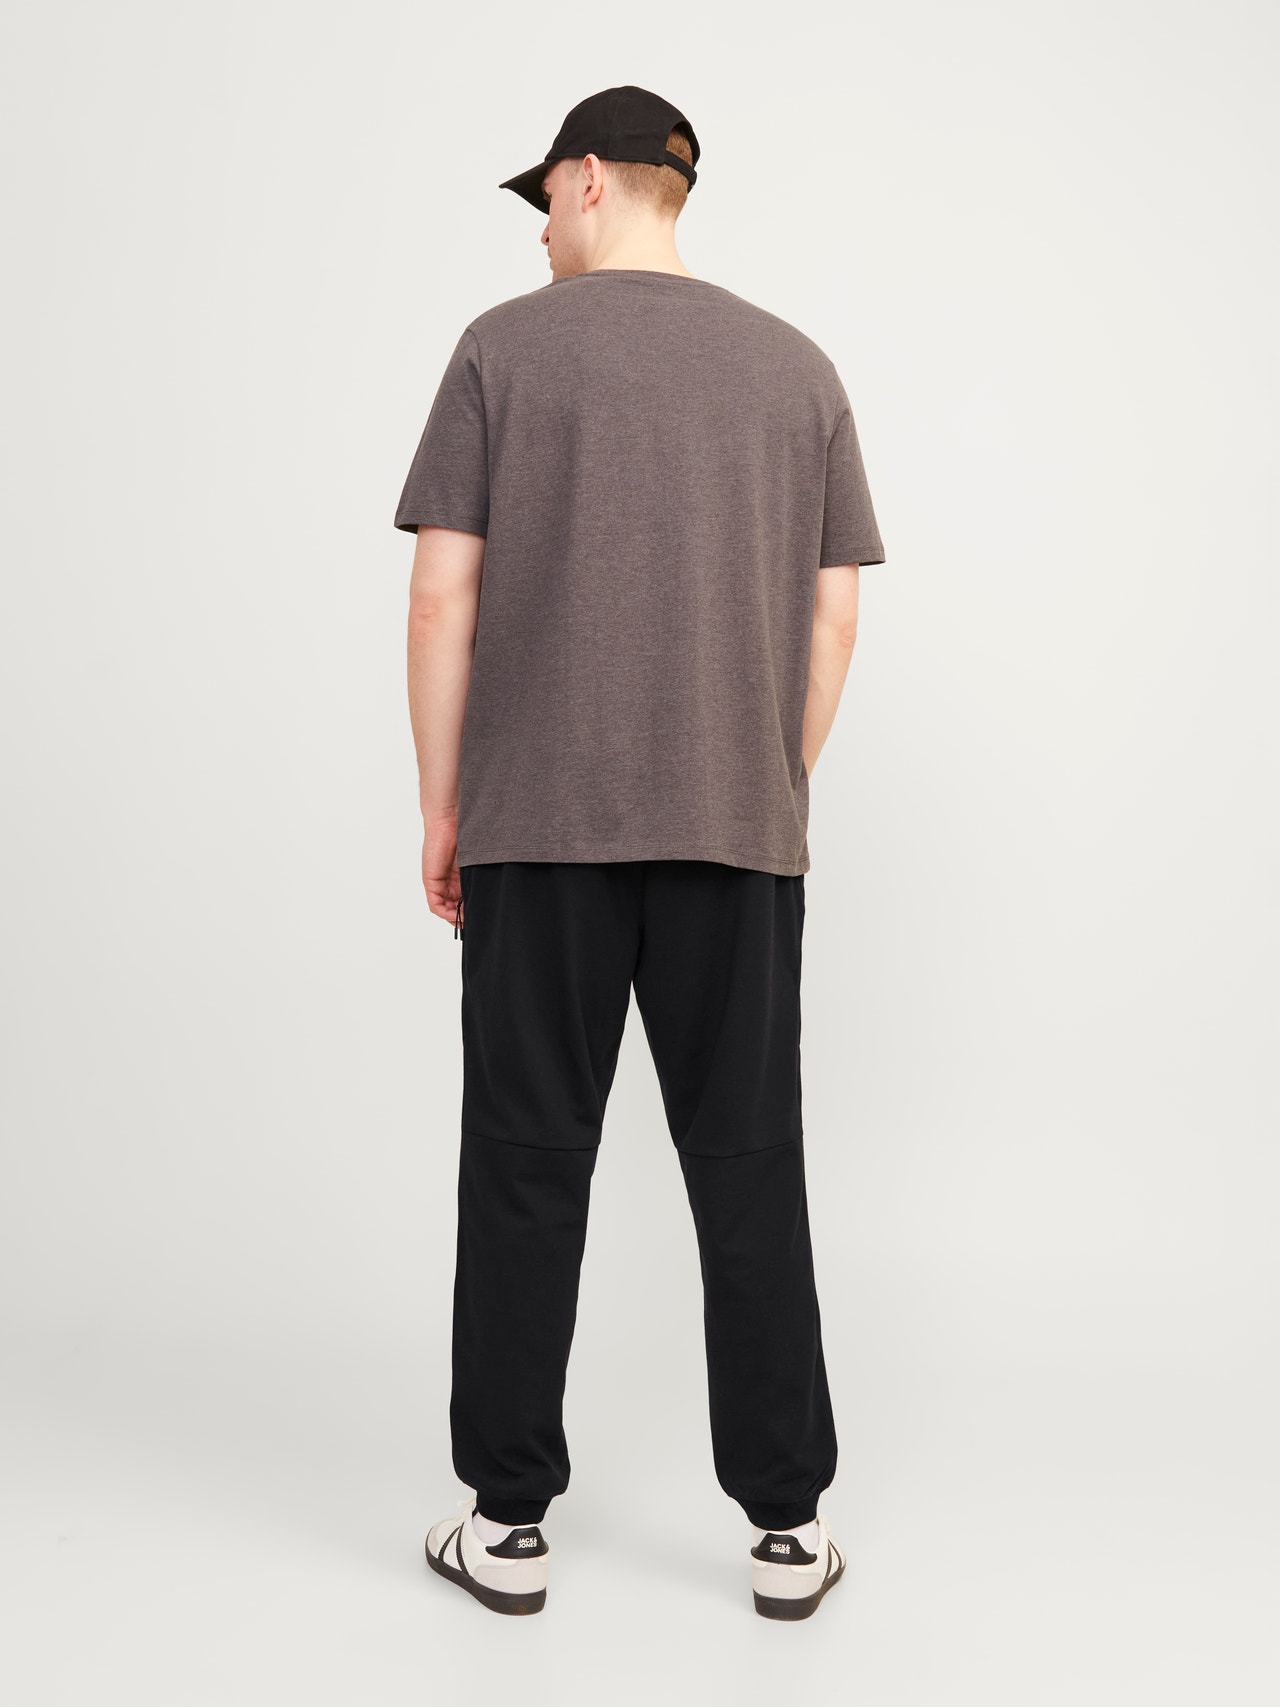 Jack & Jones Plus Size Pantalon de survêtement Slim Fit -Black - 12257672